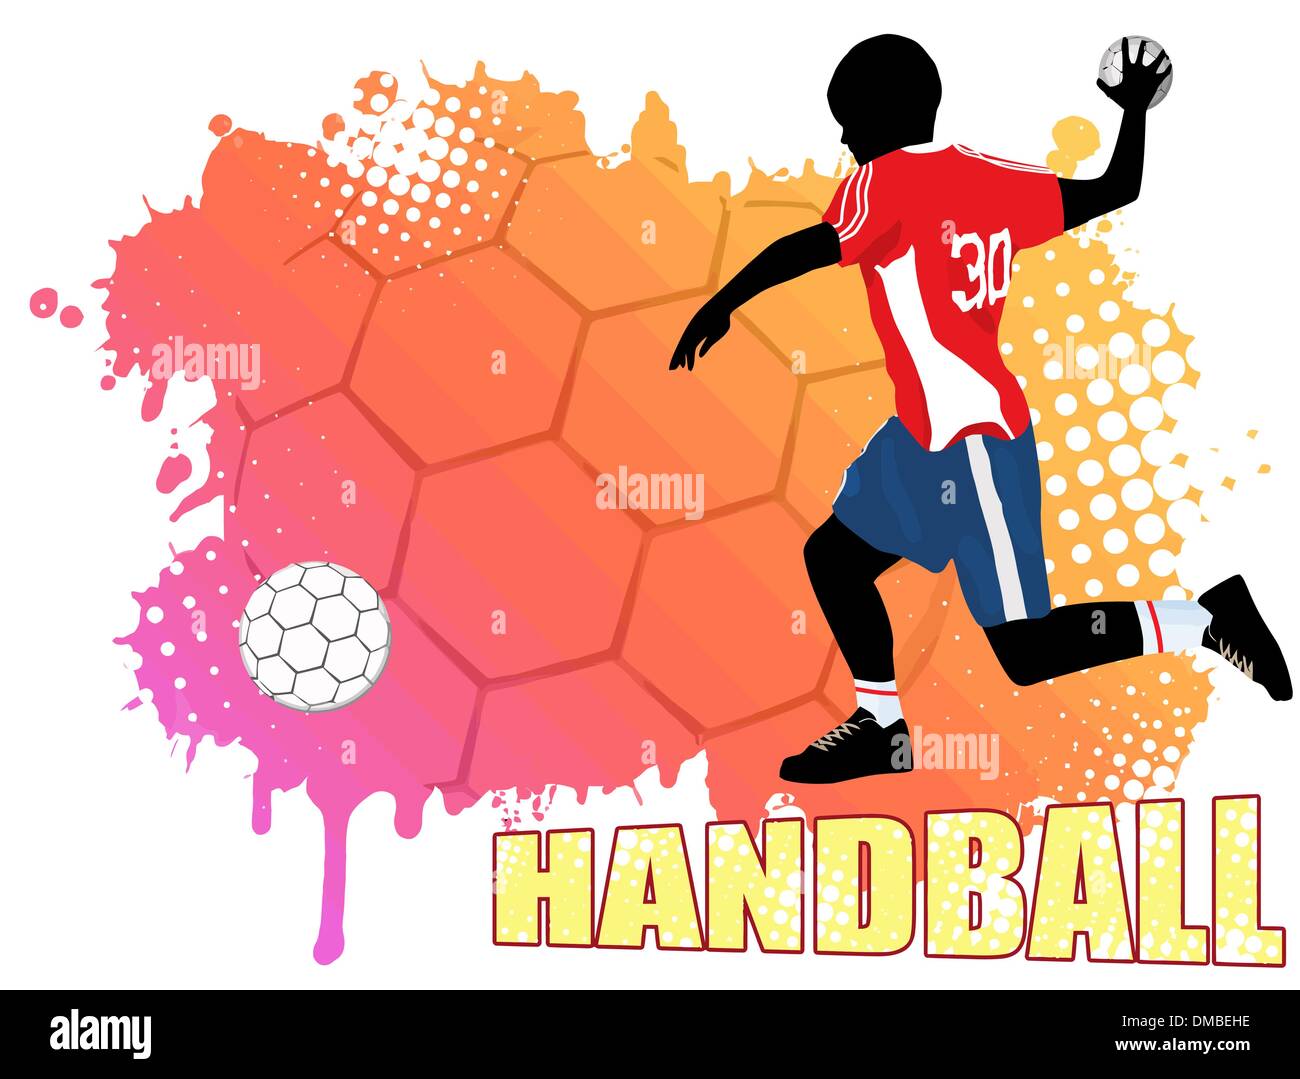 Handball poster Stock Vector